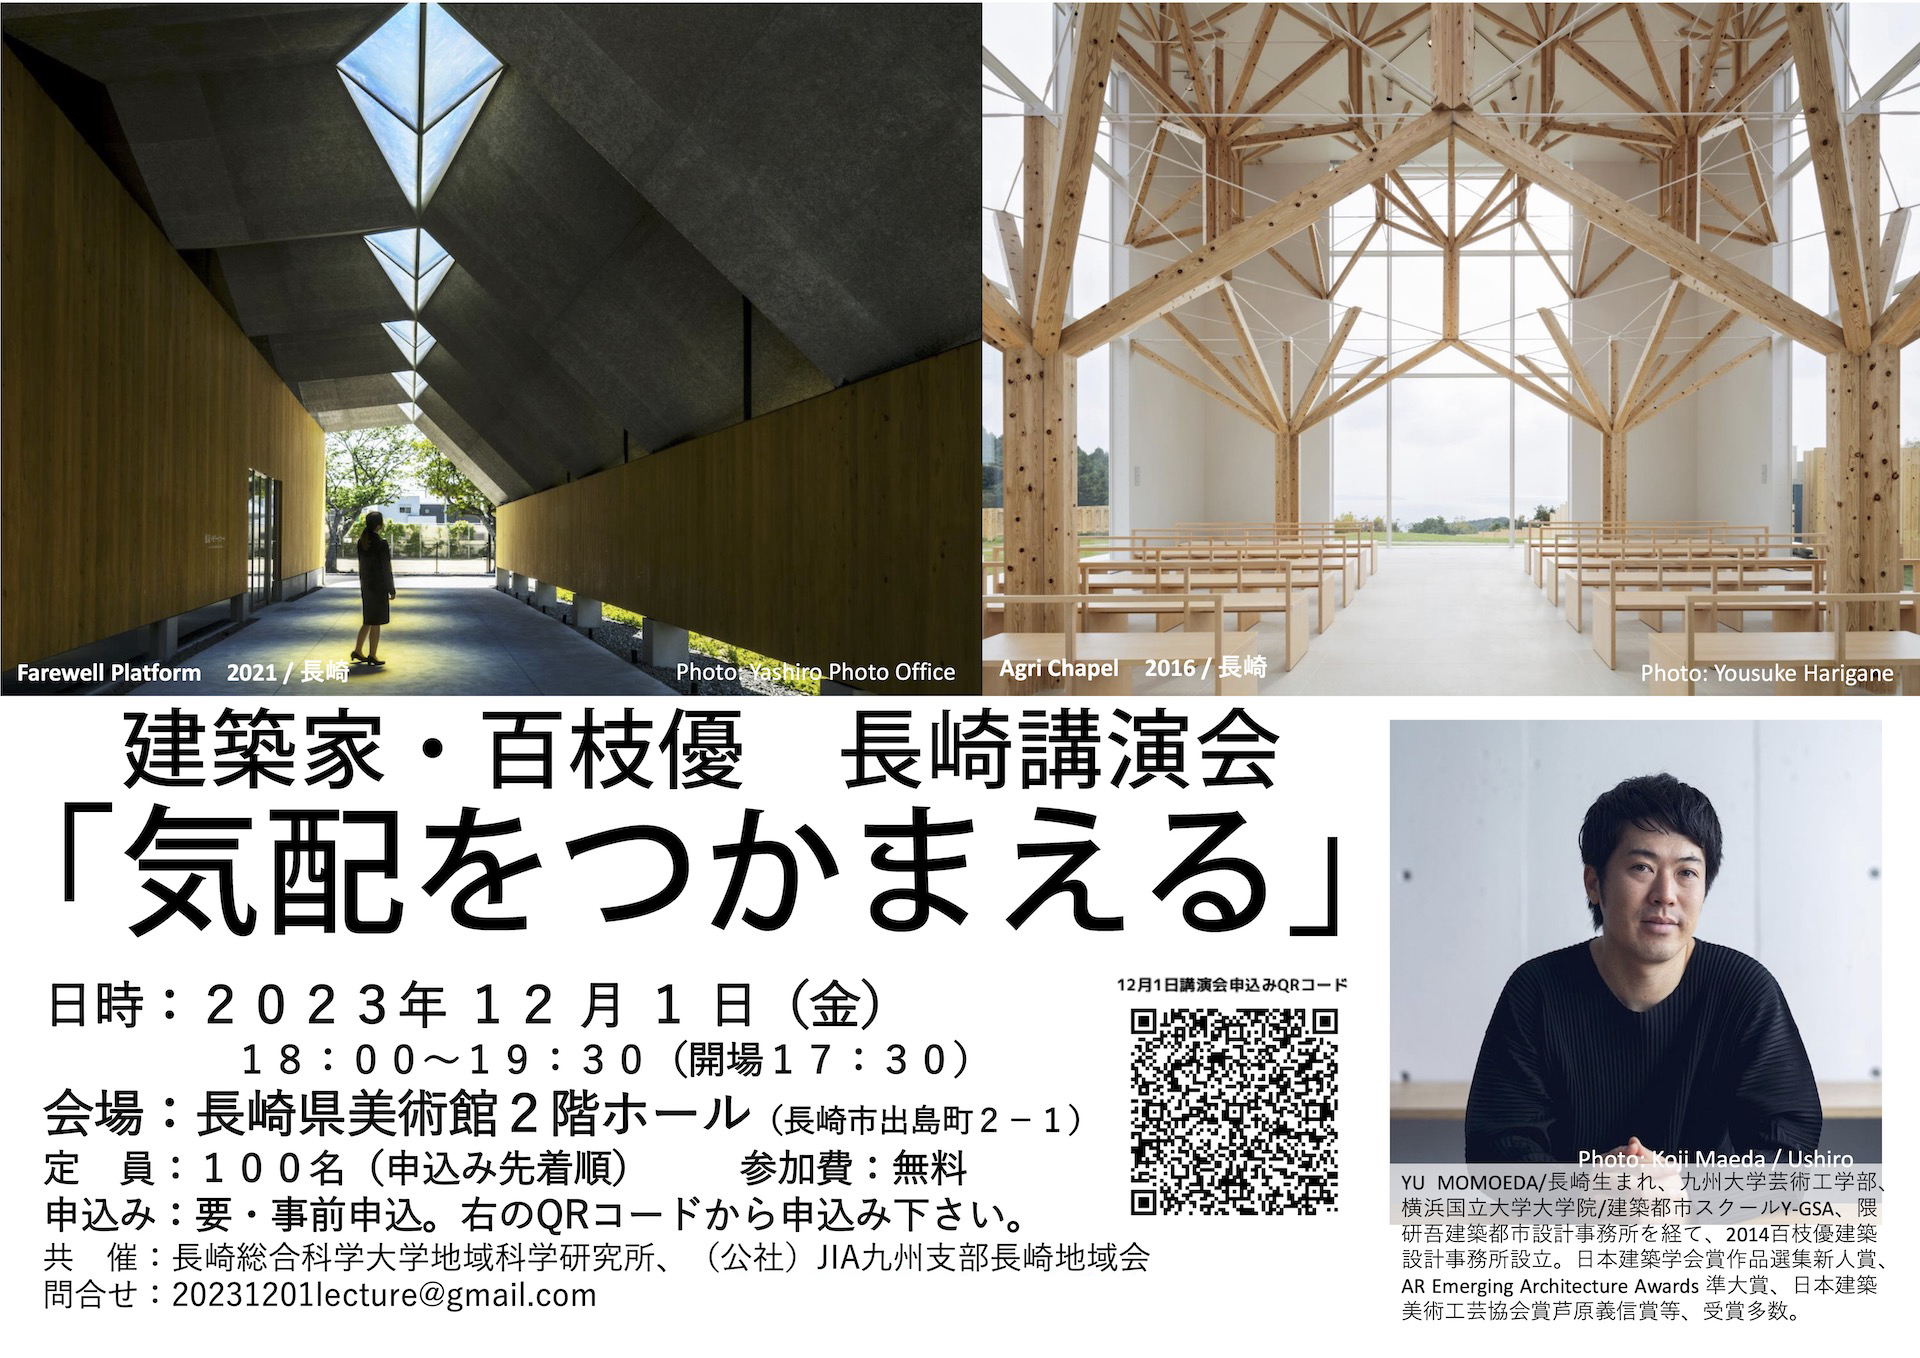 長崎県美術館にて講演会が開催されます